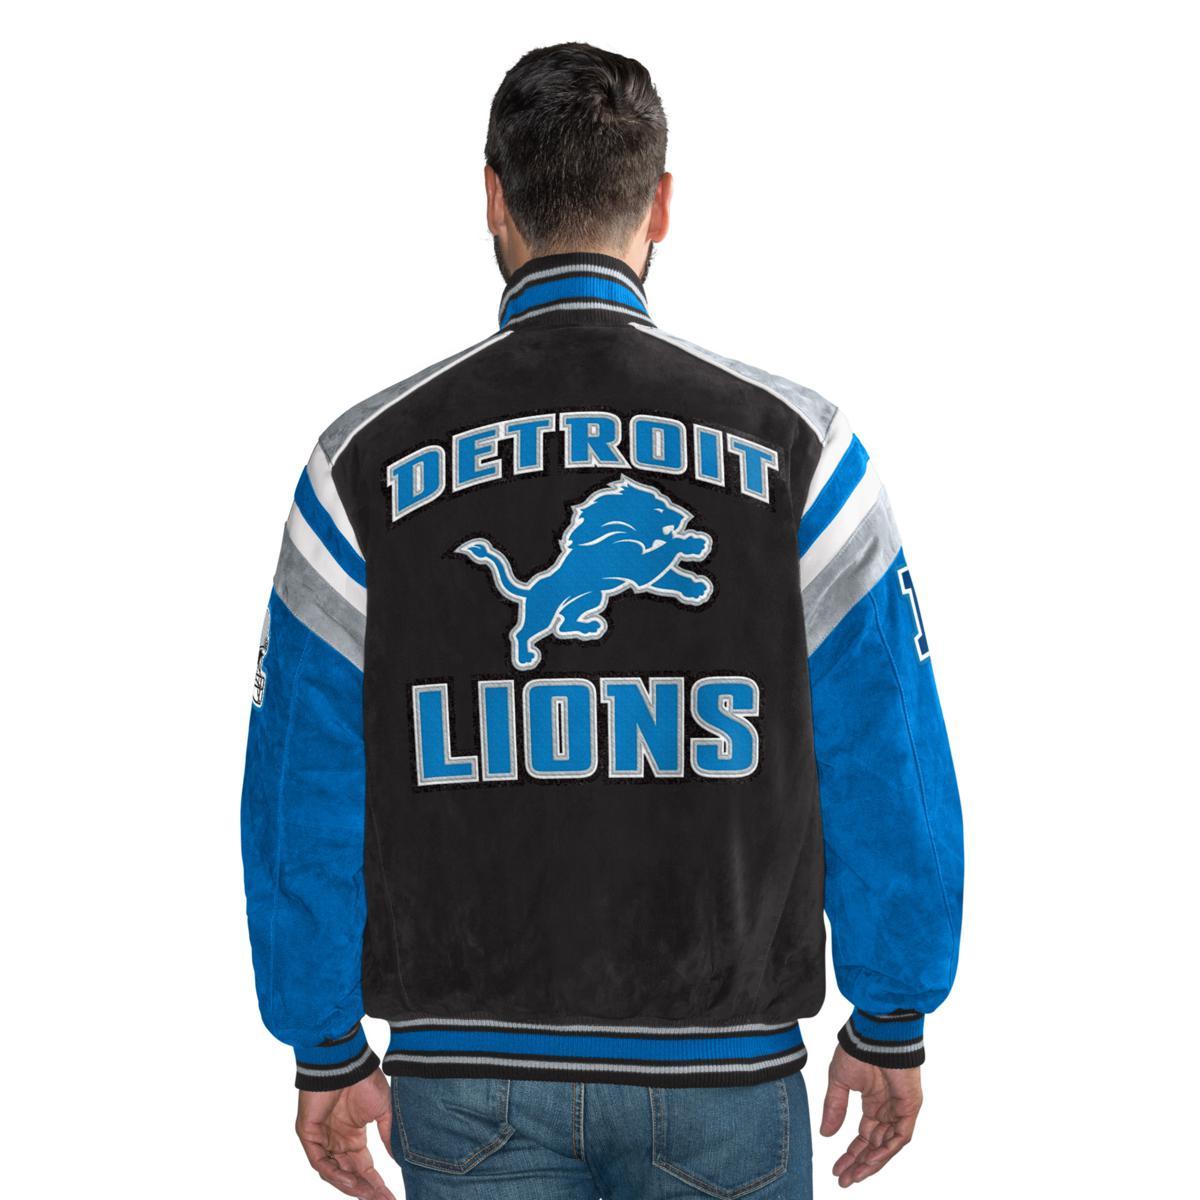 Officially Licensed NFL Men's Suede Jacket 553296/557454-J | eBay